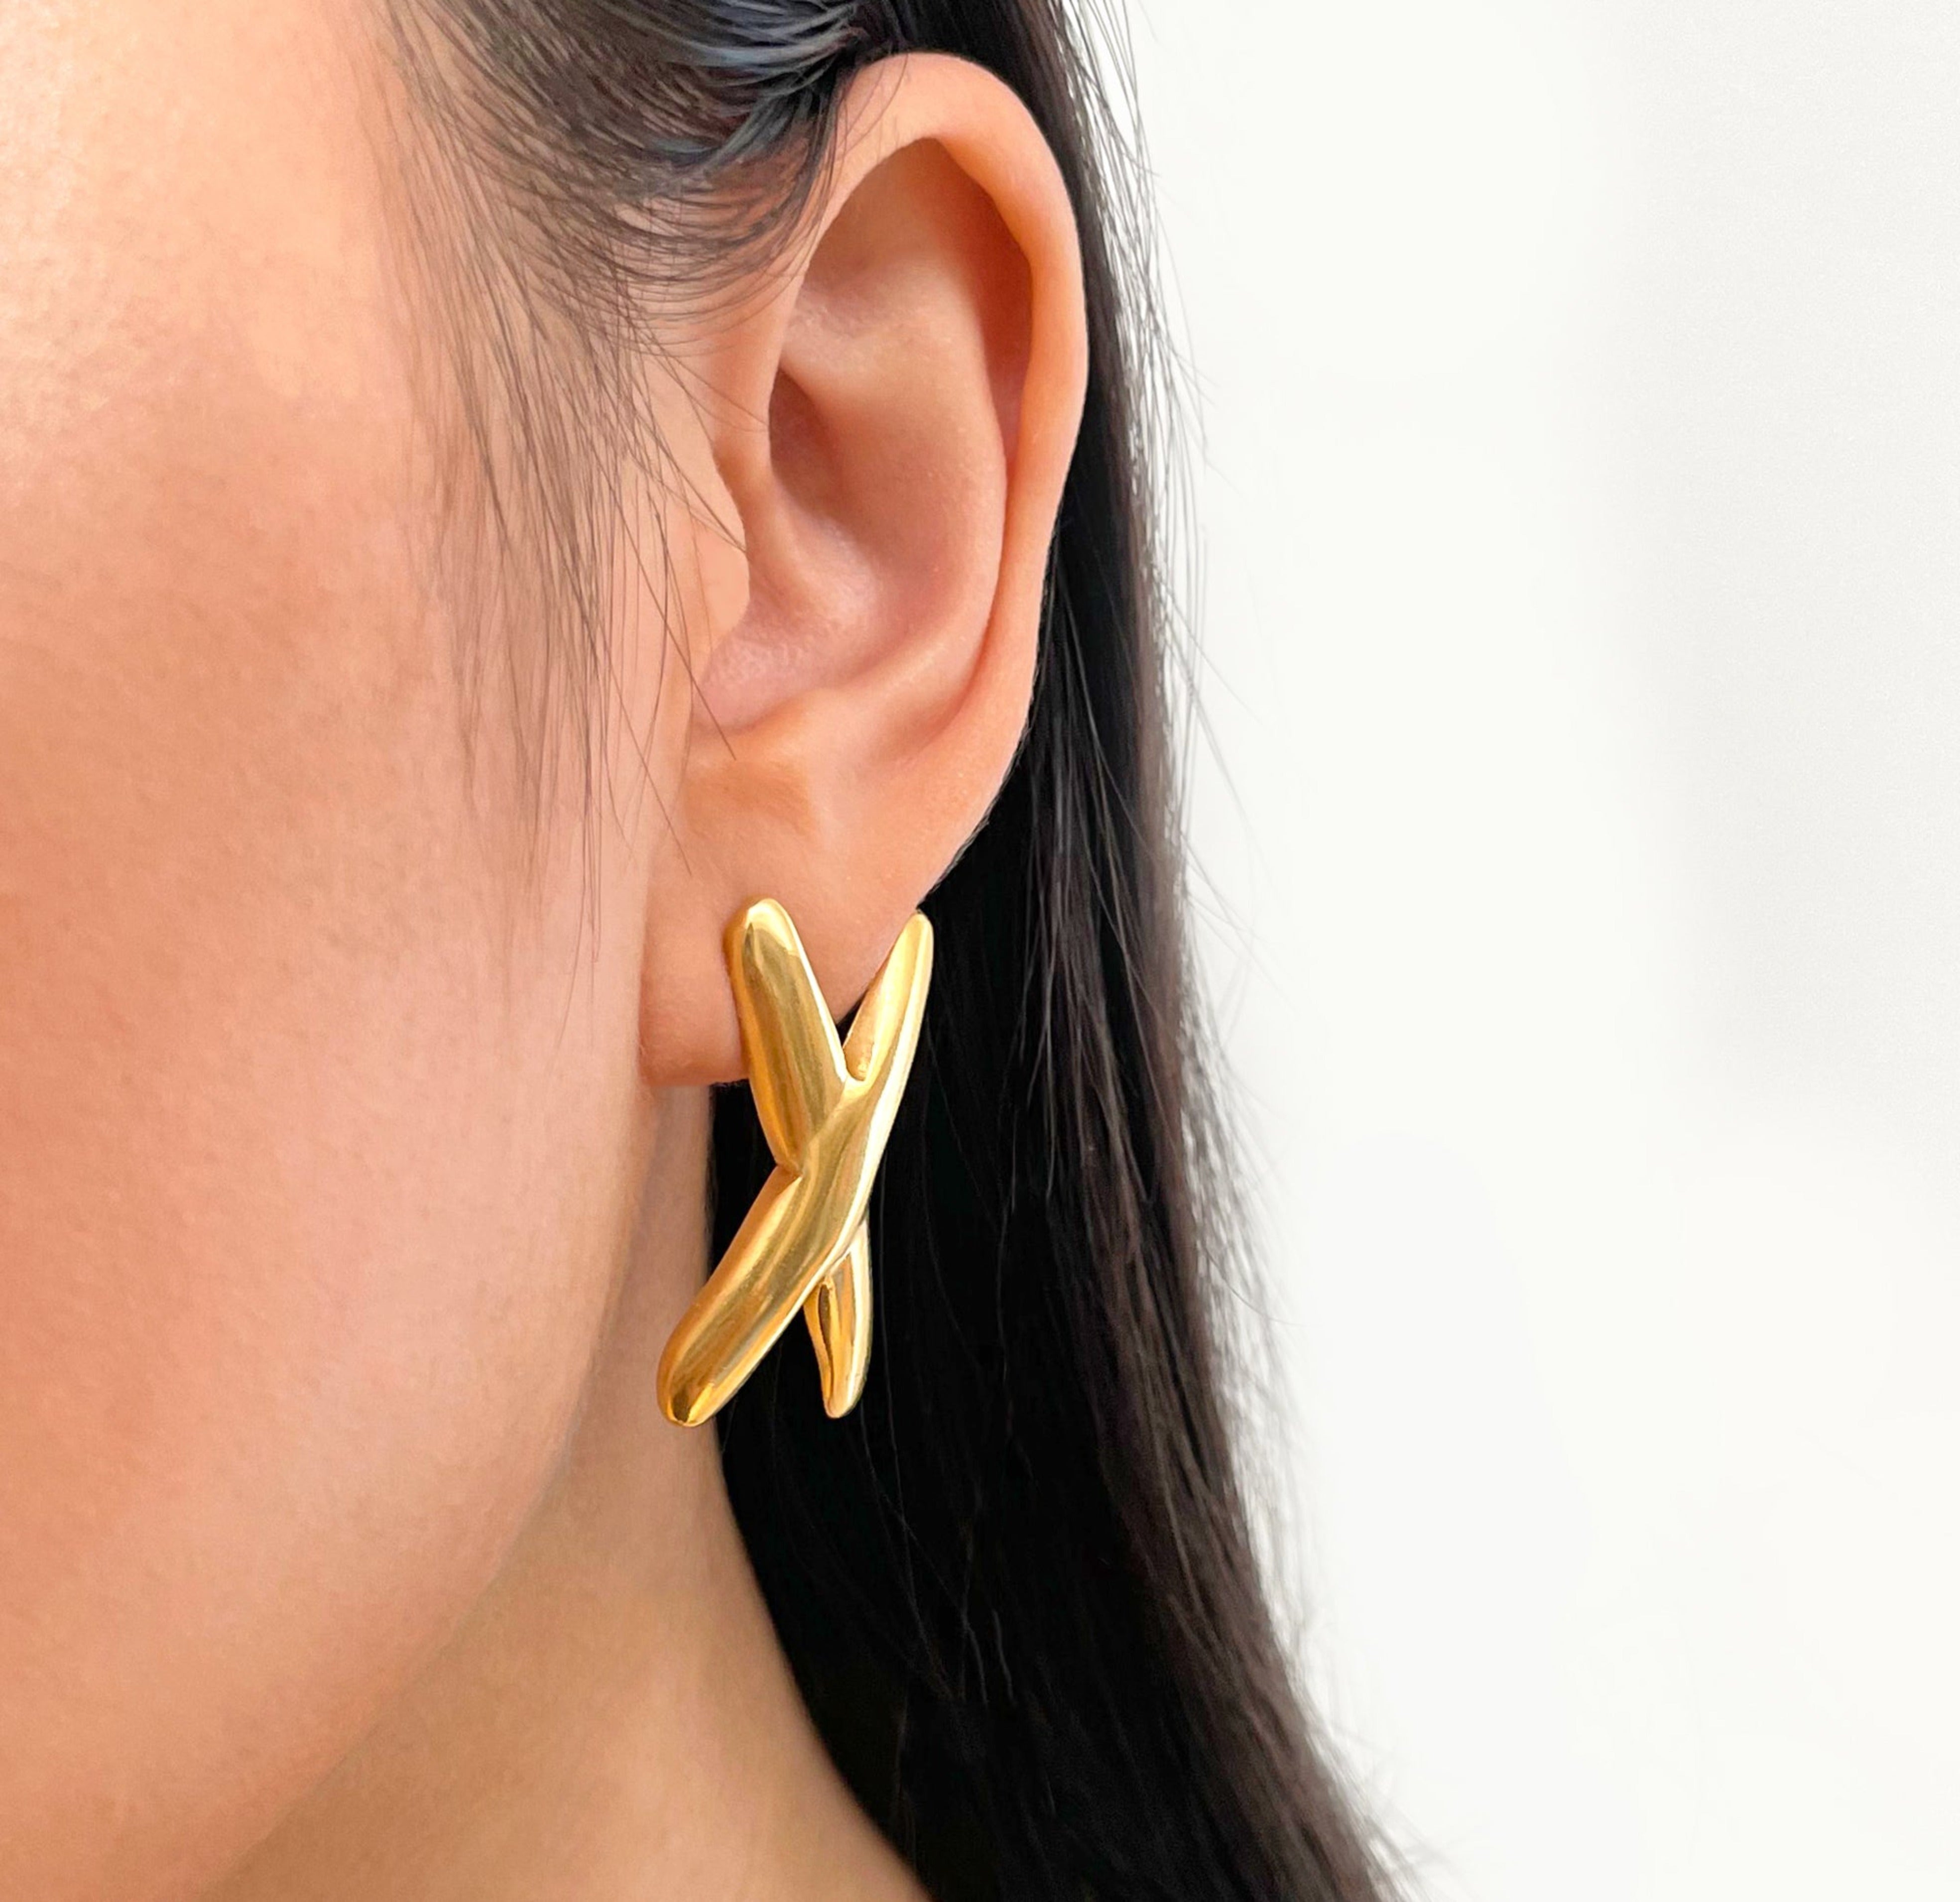 gold x earrings waterproof jewelry